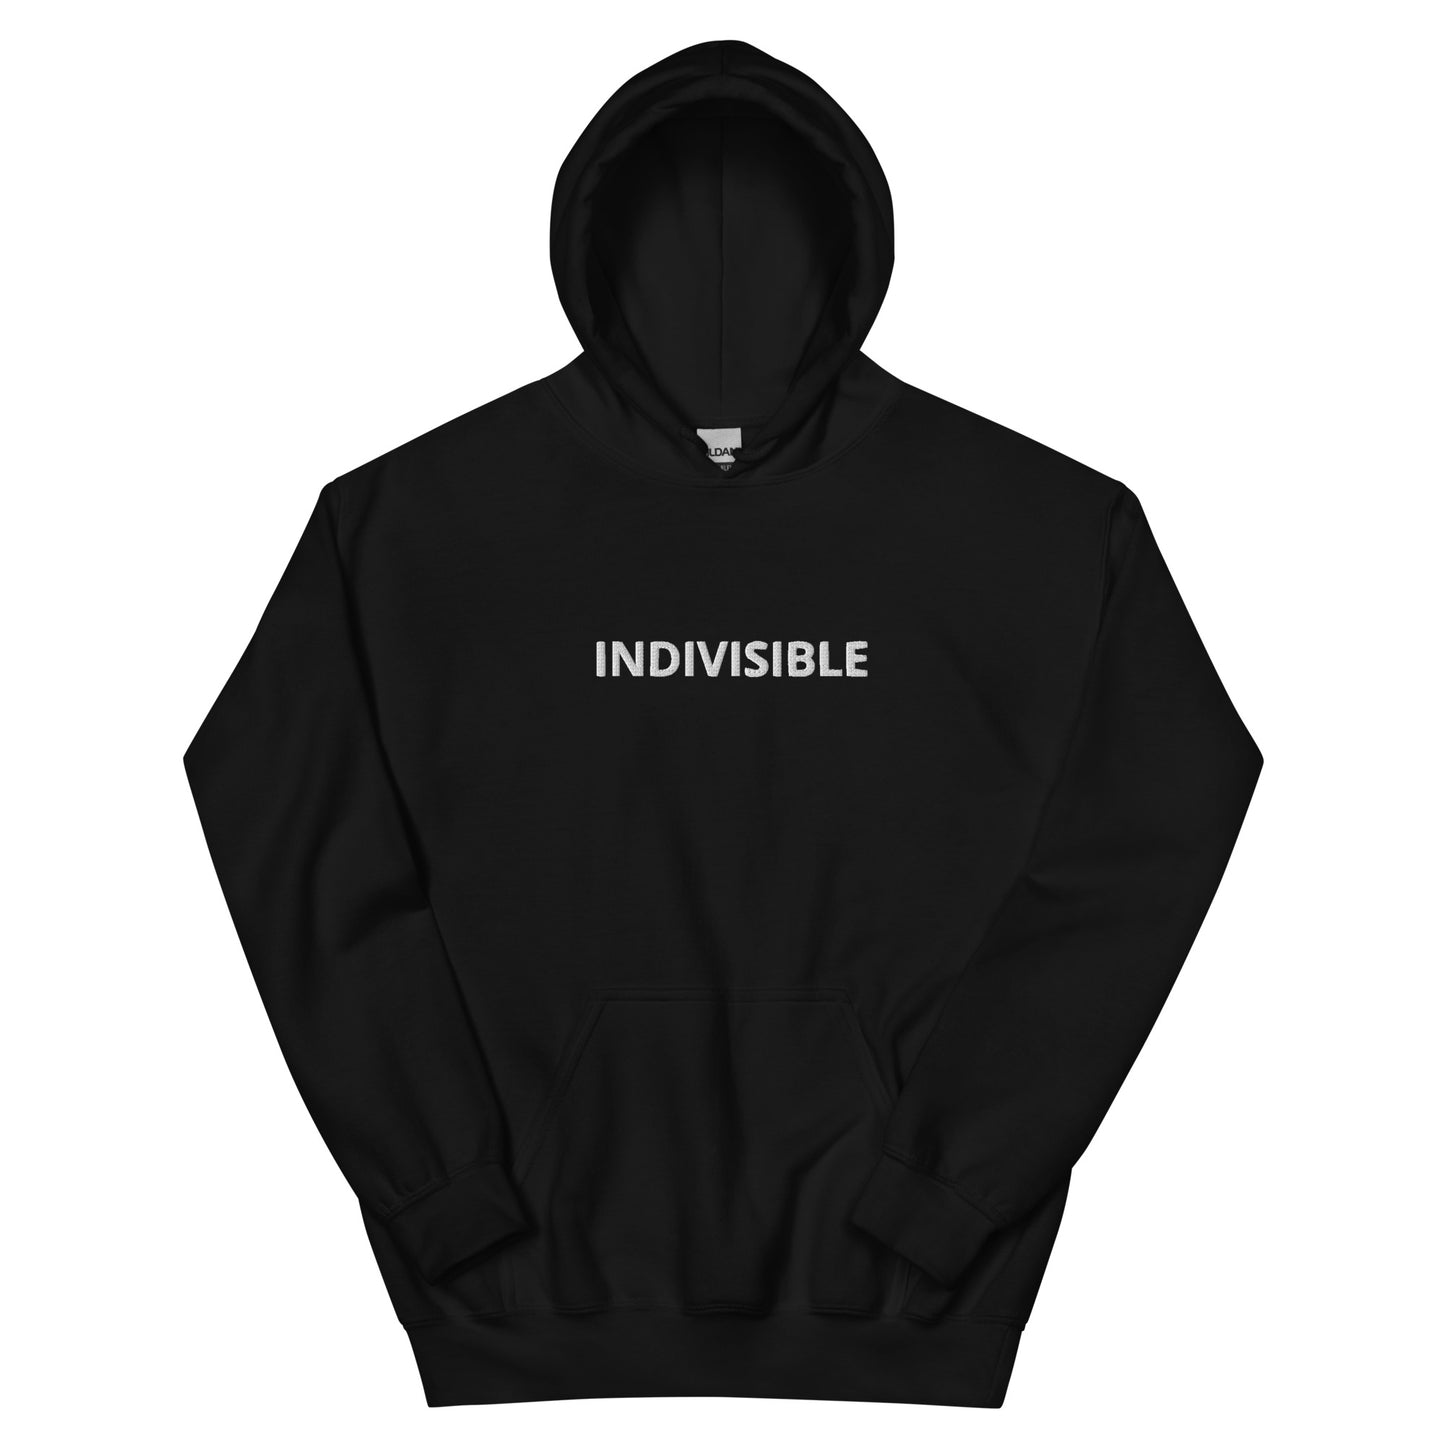 Indivisible Hoodie- Black